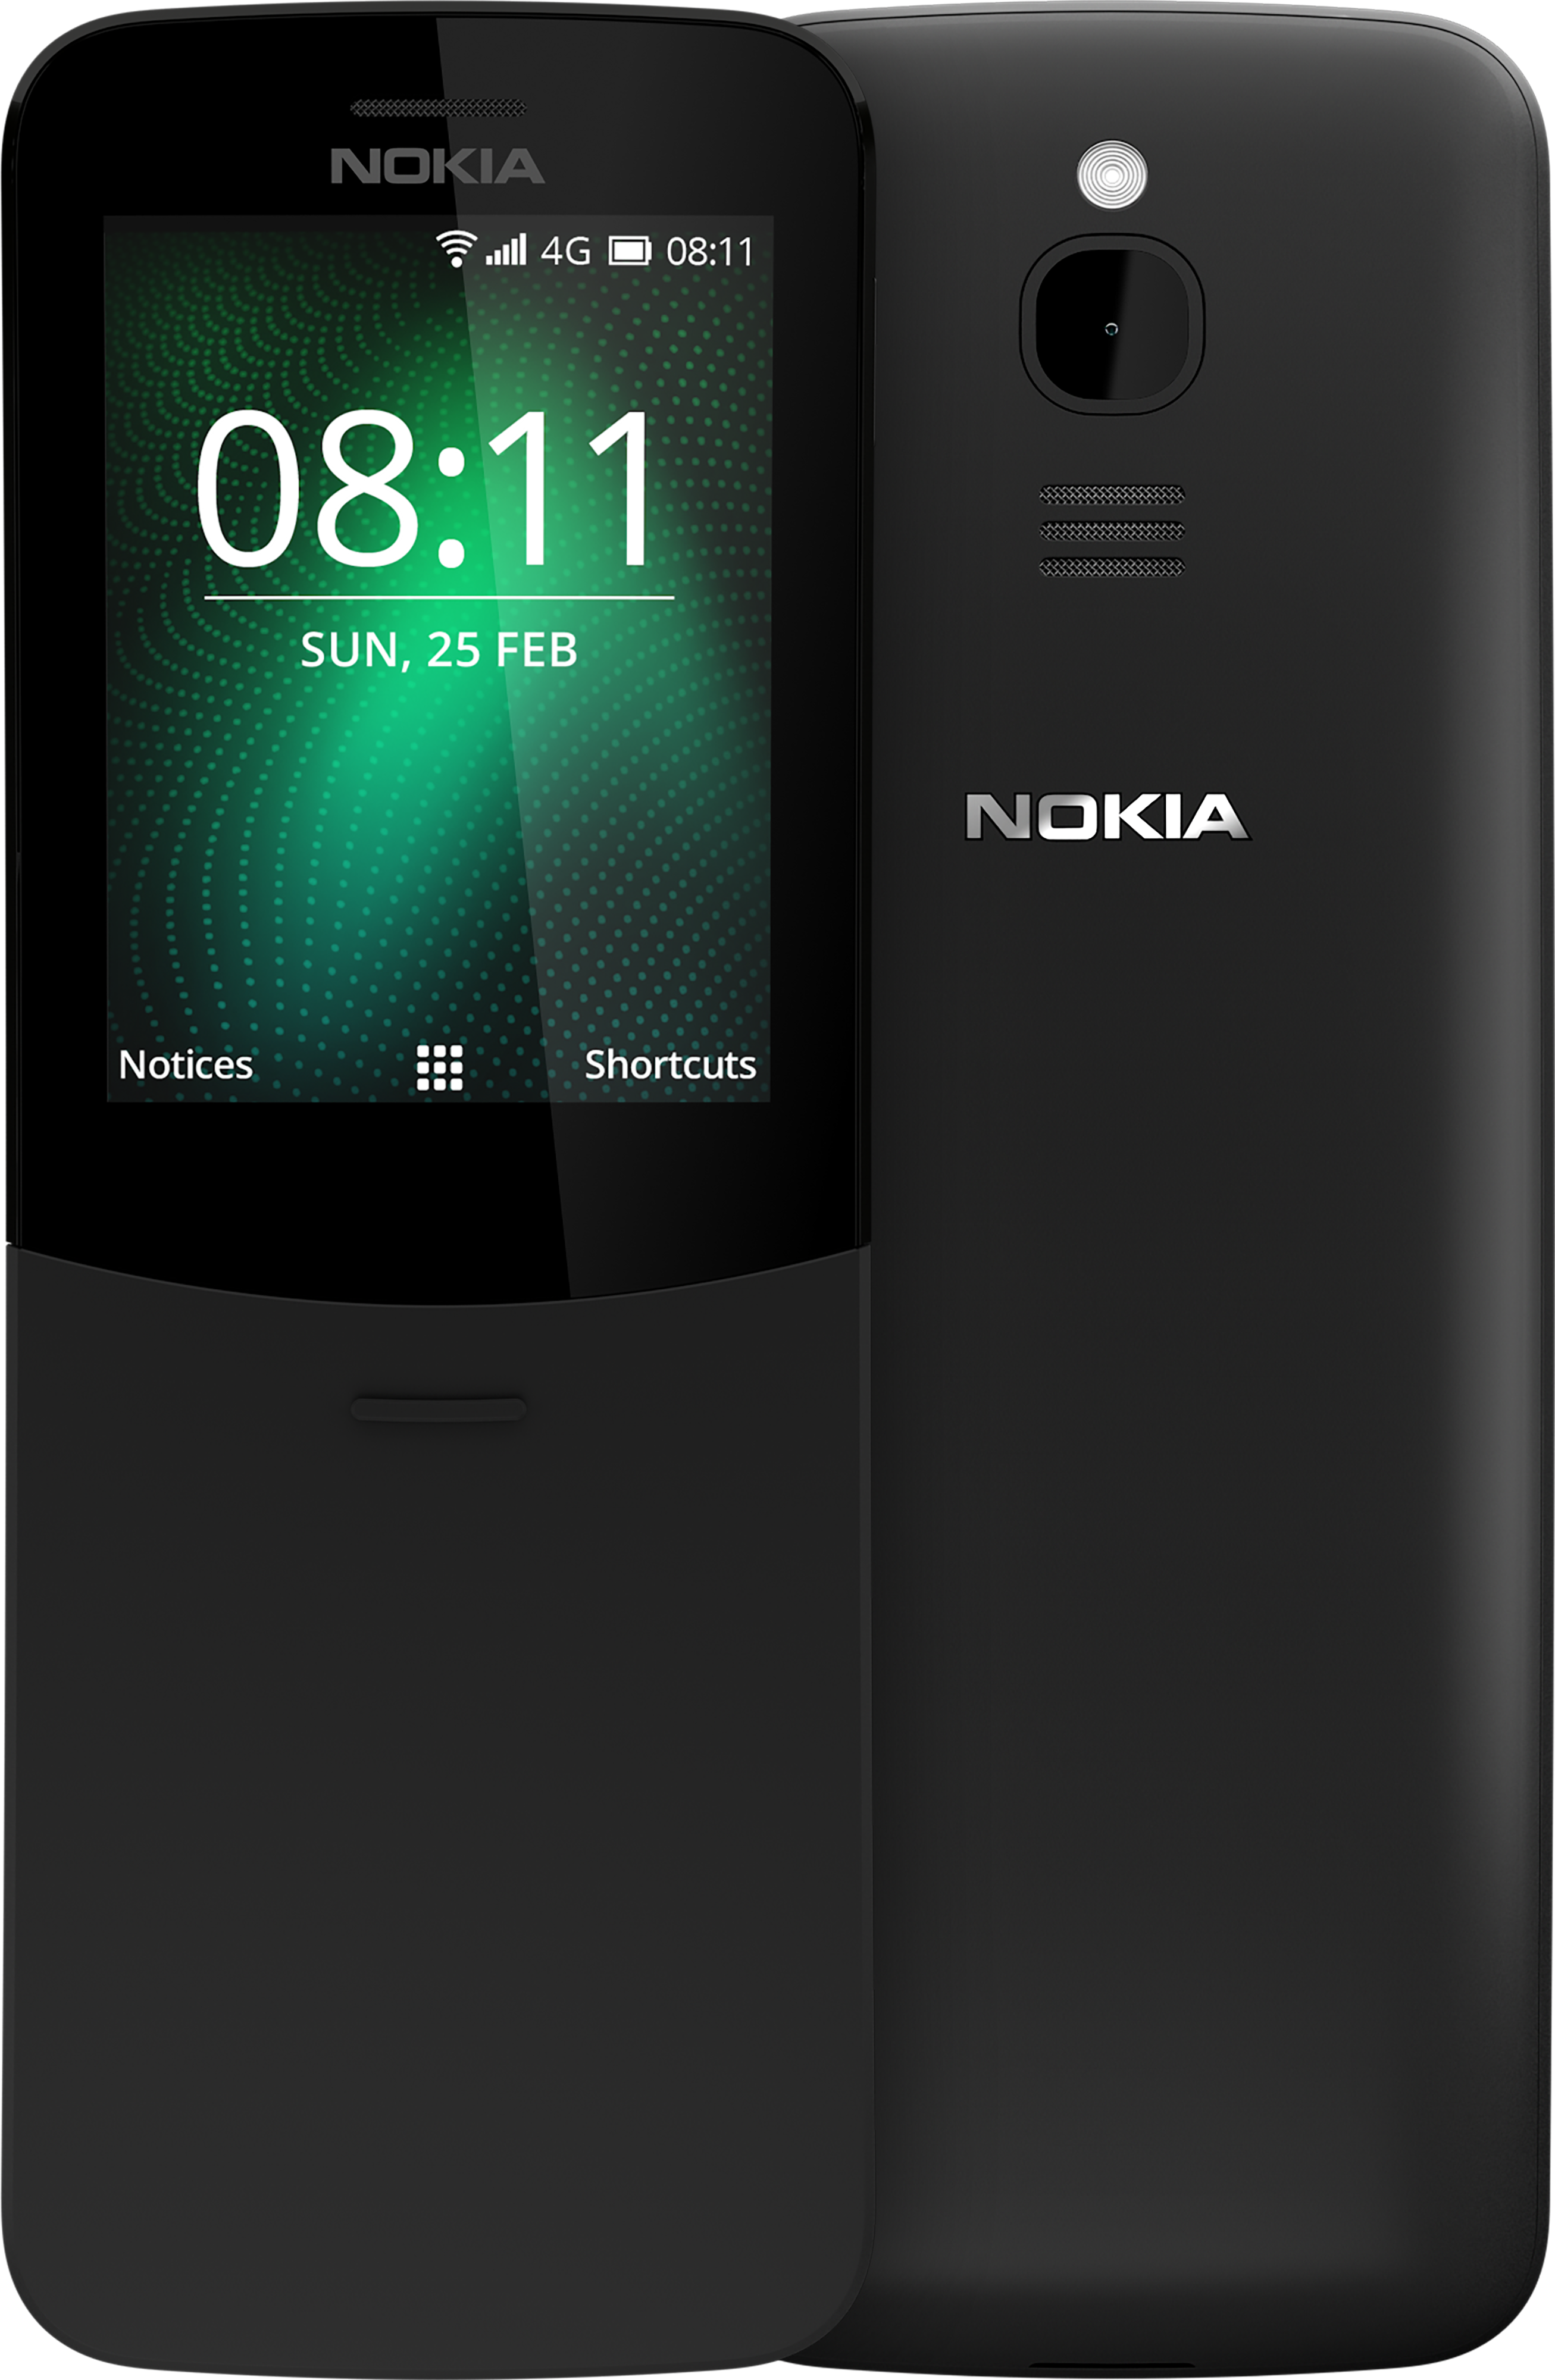 Nokia 8110 4G sở hữu nhiều tính năng đáng tiền, cho phép bạn duyệt web, lướt Facebook và thậm chí còn chơi được trò chơi yêu thích. Đừng bỏ qua điện thoại cổ điển này.